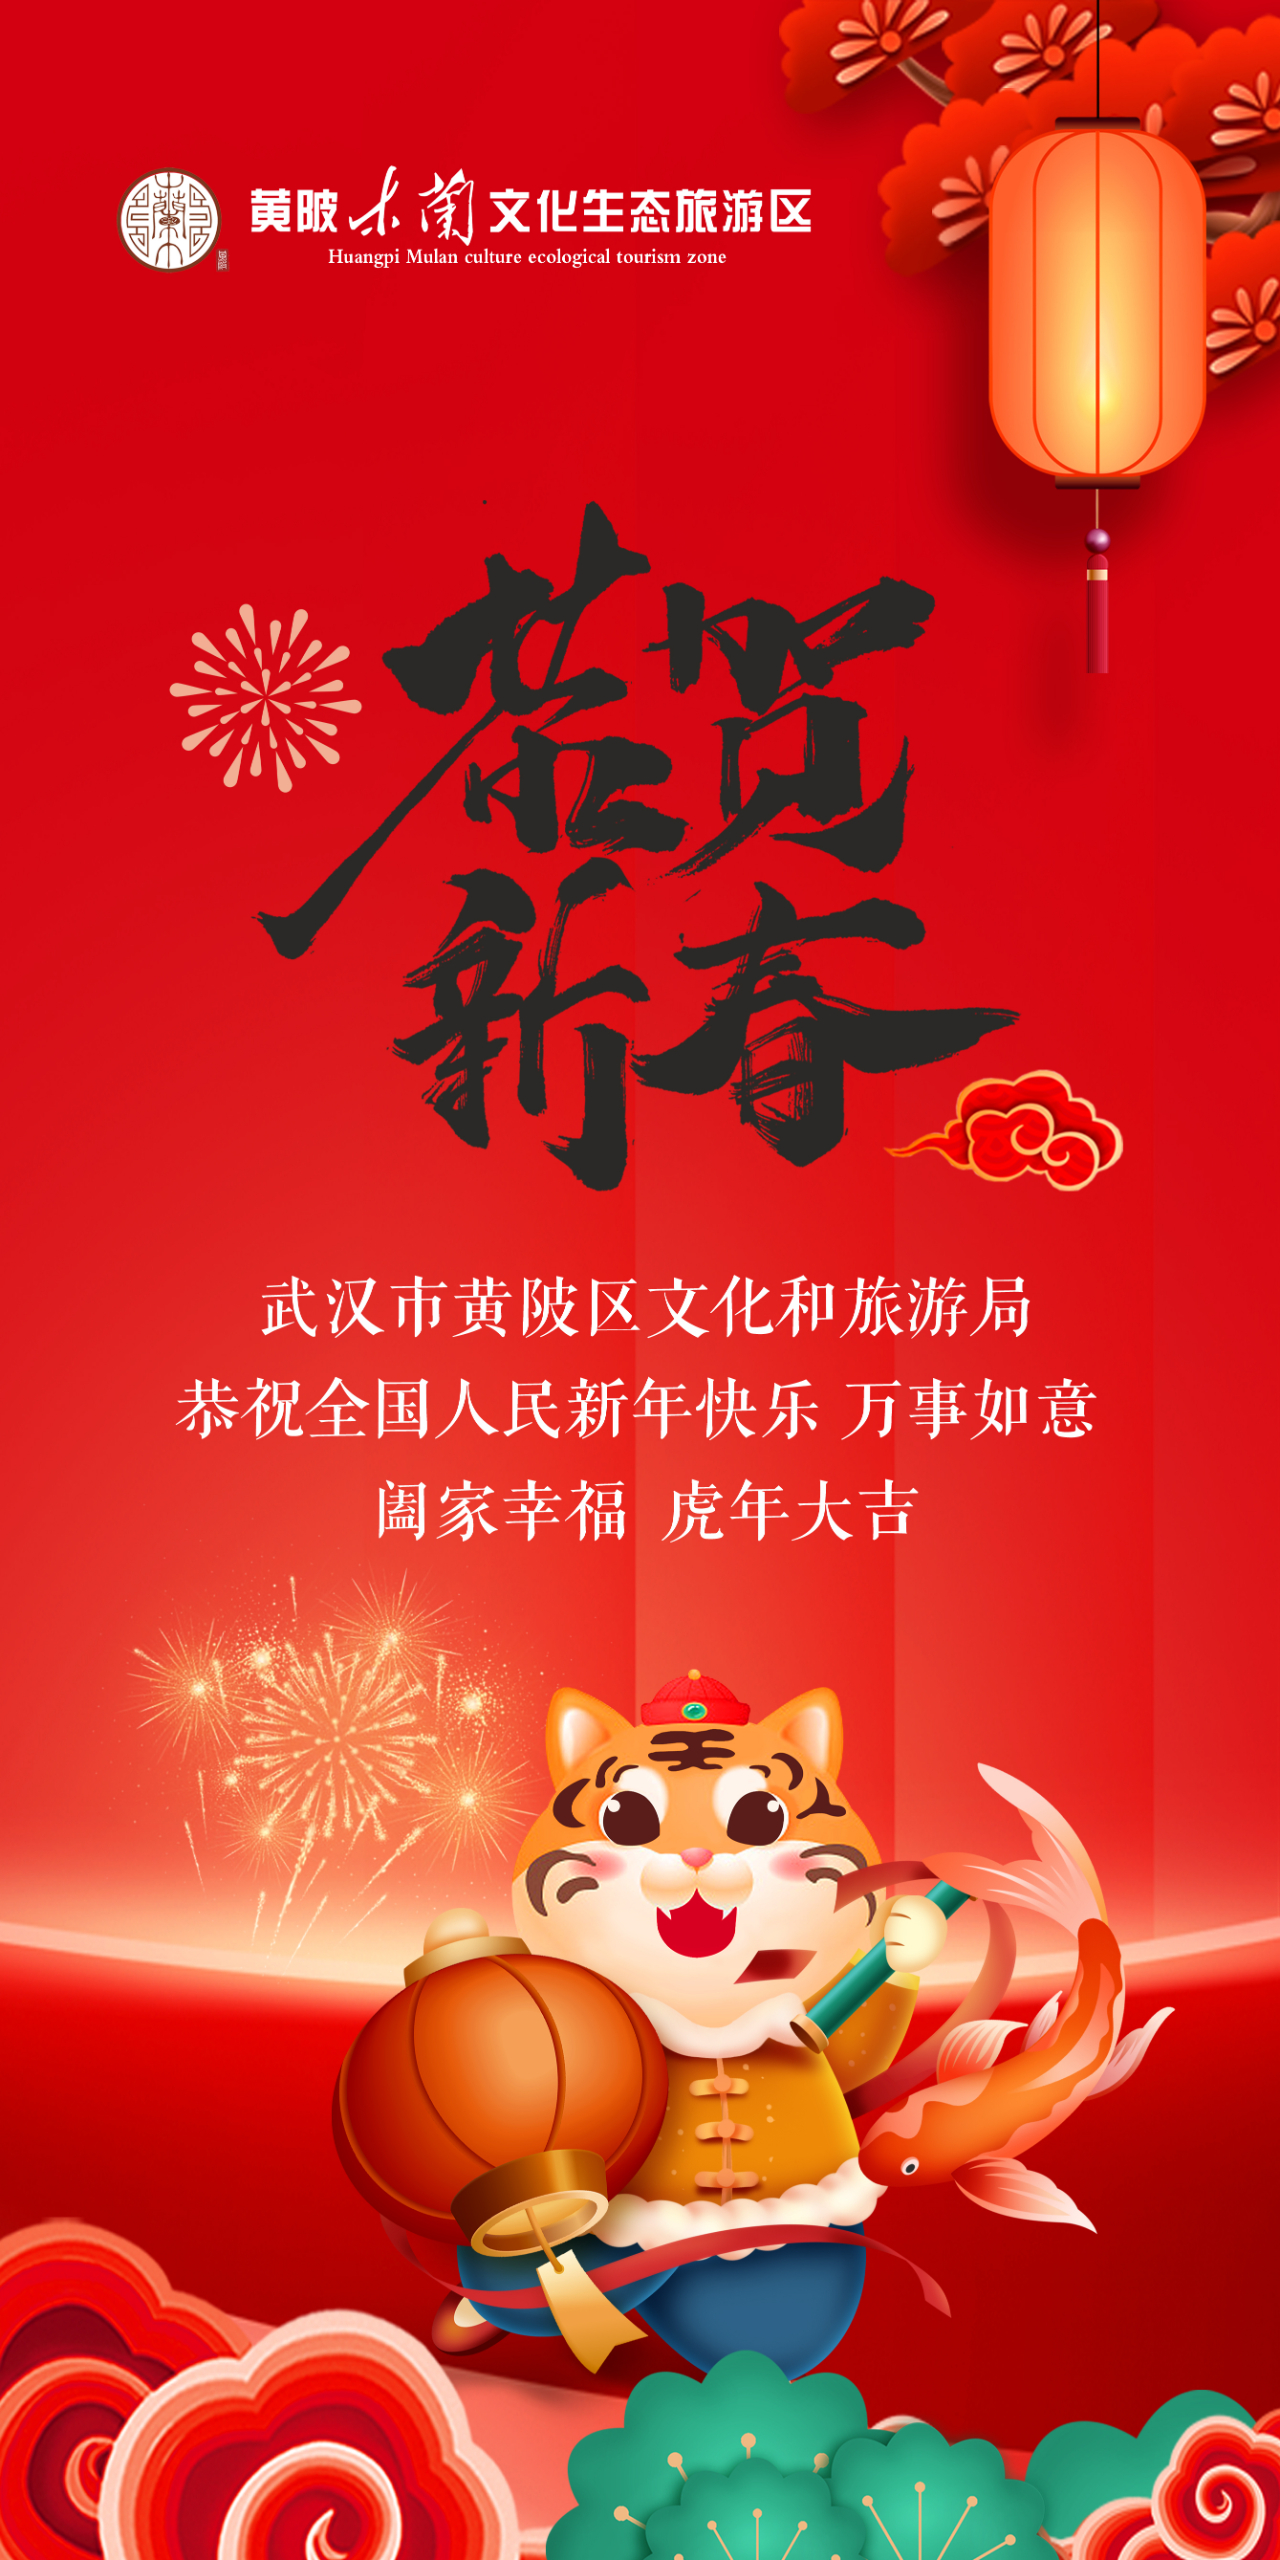 贺新春！黄陂文旅恭祝全国人民新年快乐，万事如意，阖家幸福，虎年大吉！